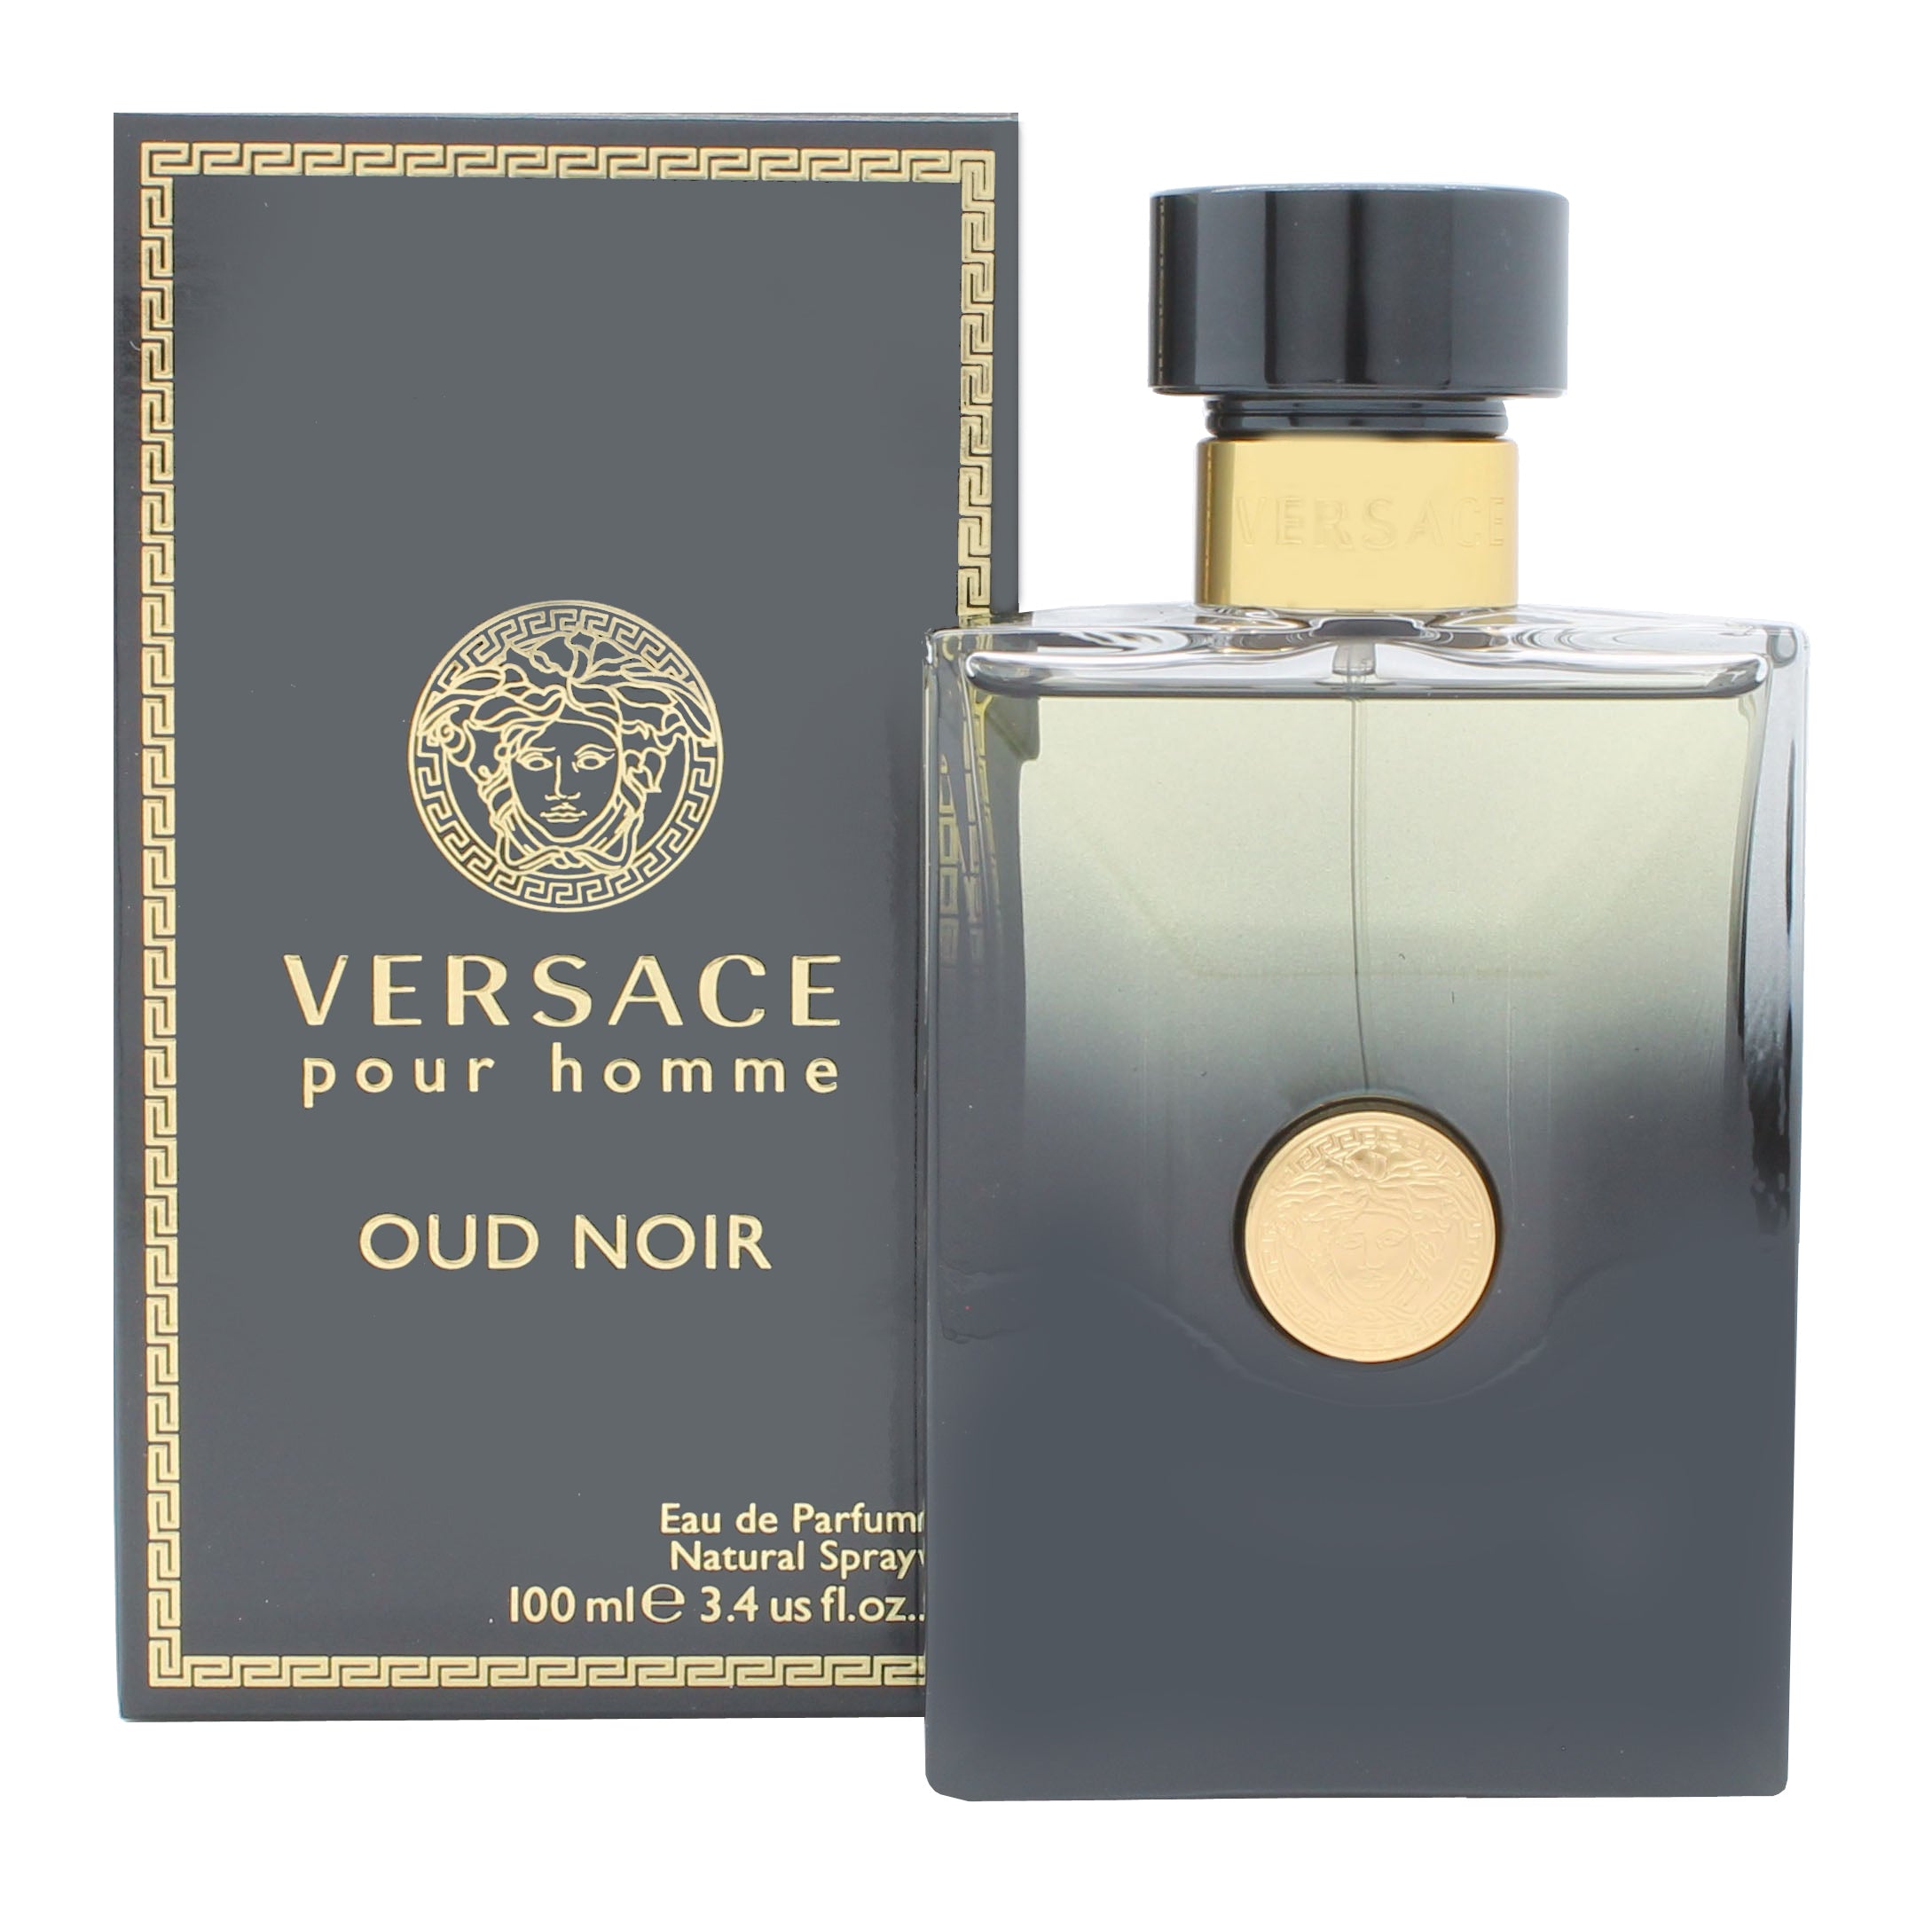 View Versace Oud Noir Eau de Parfum 100ml Sprej information